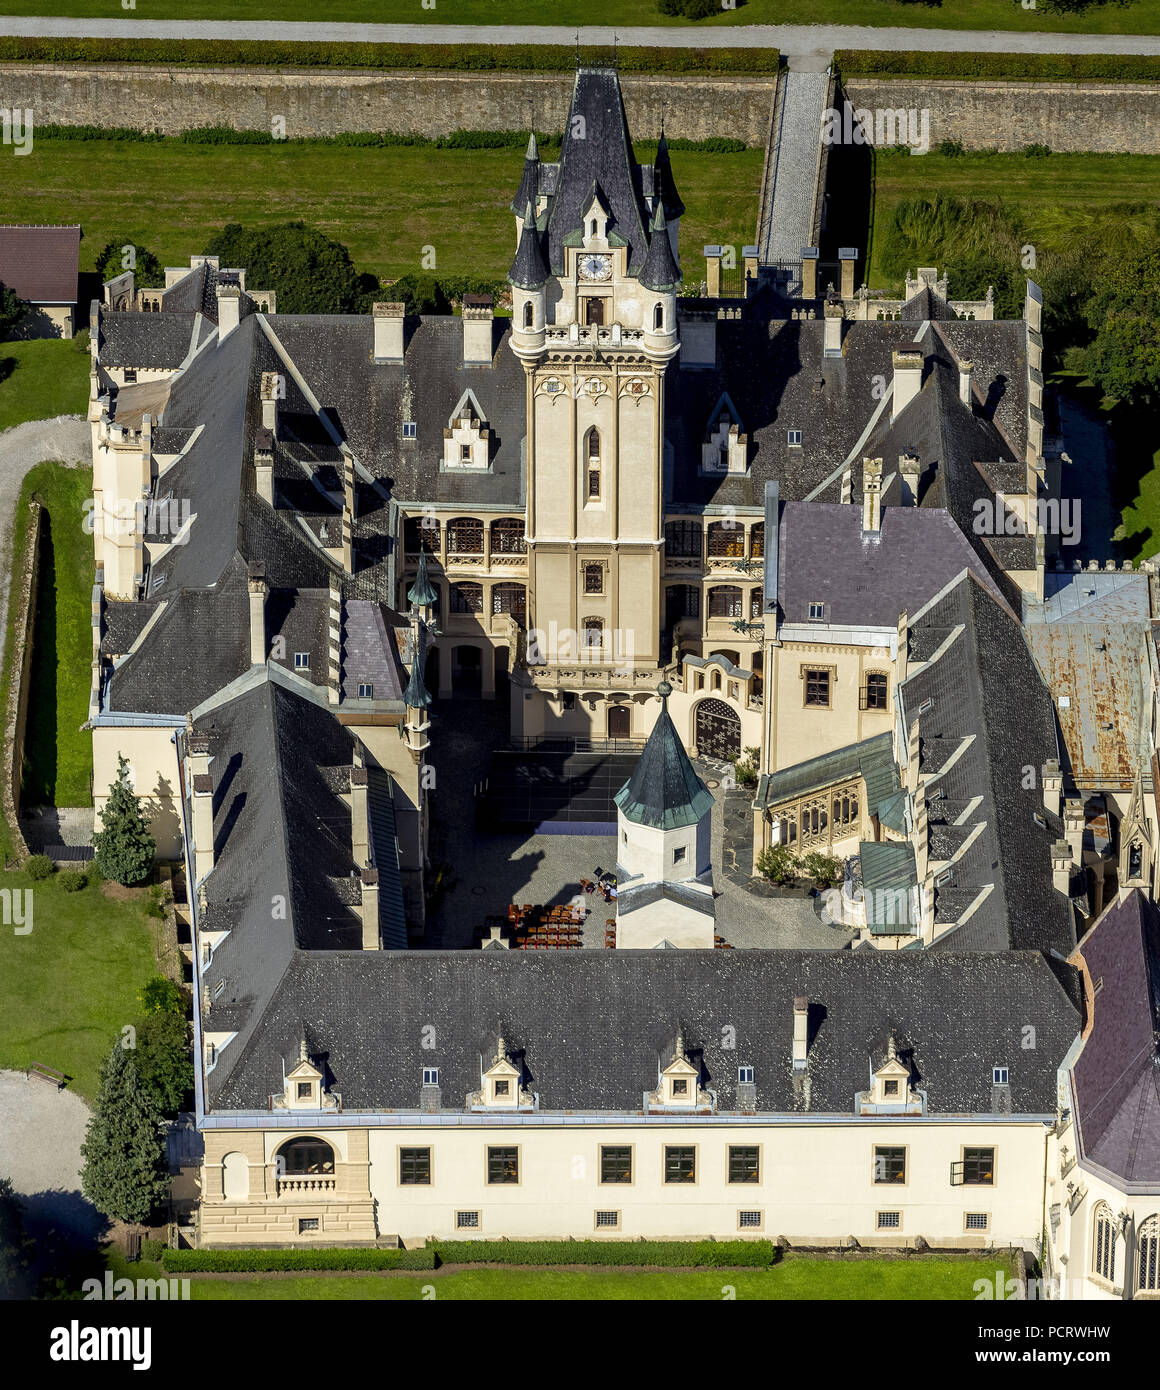 Luftaufnahme, Schloss Grafenegg, romantischen Historismus, Grafenegg, Niederösterreich, Österreich Stockfoto